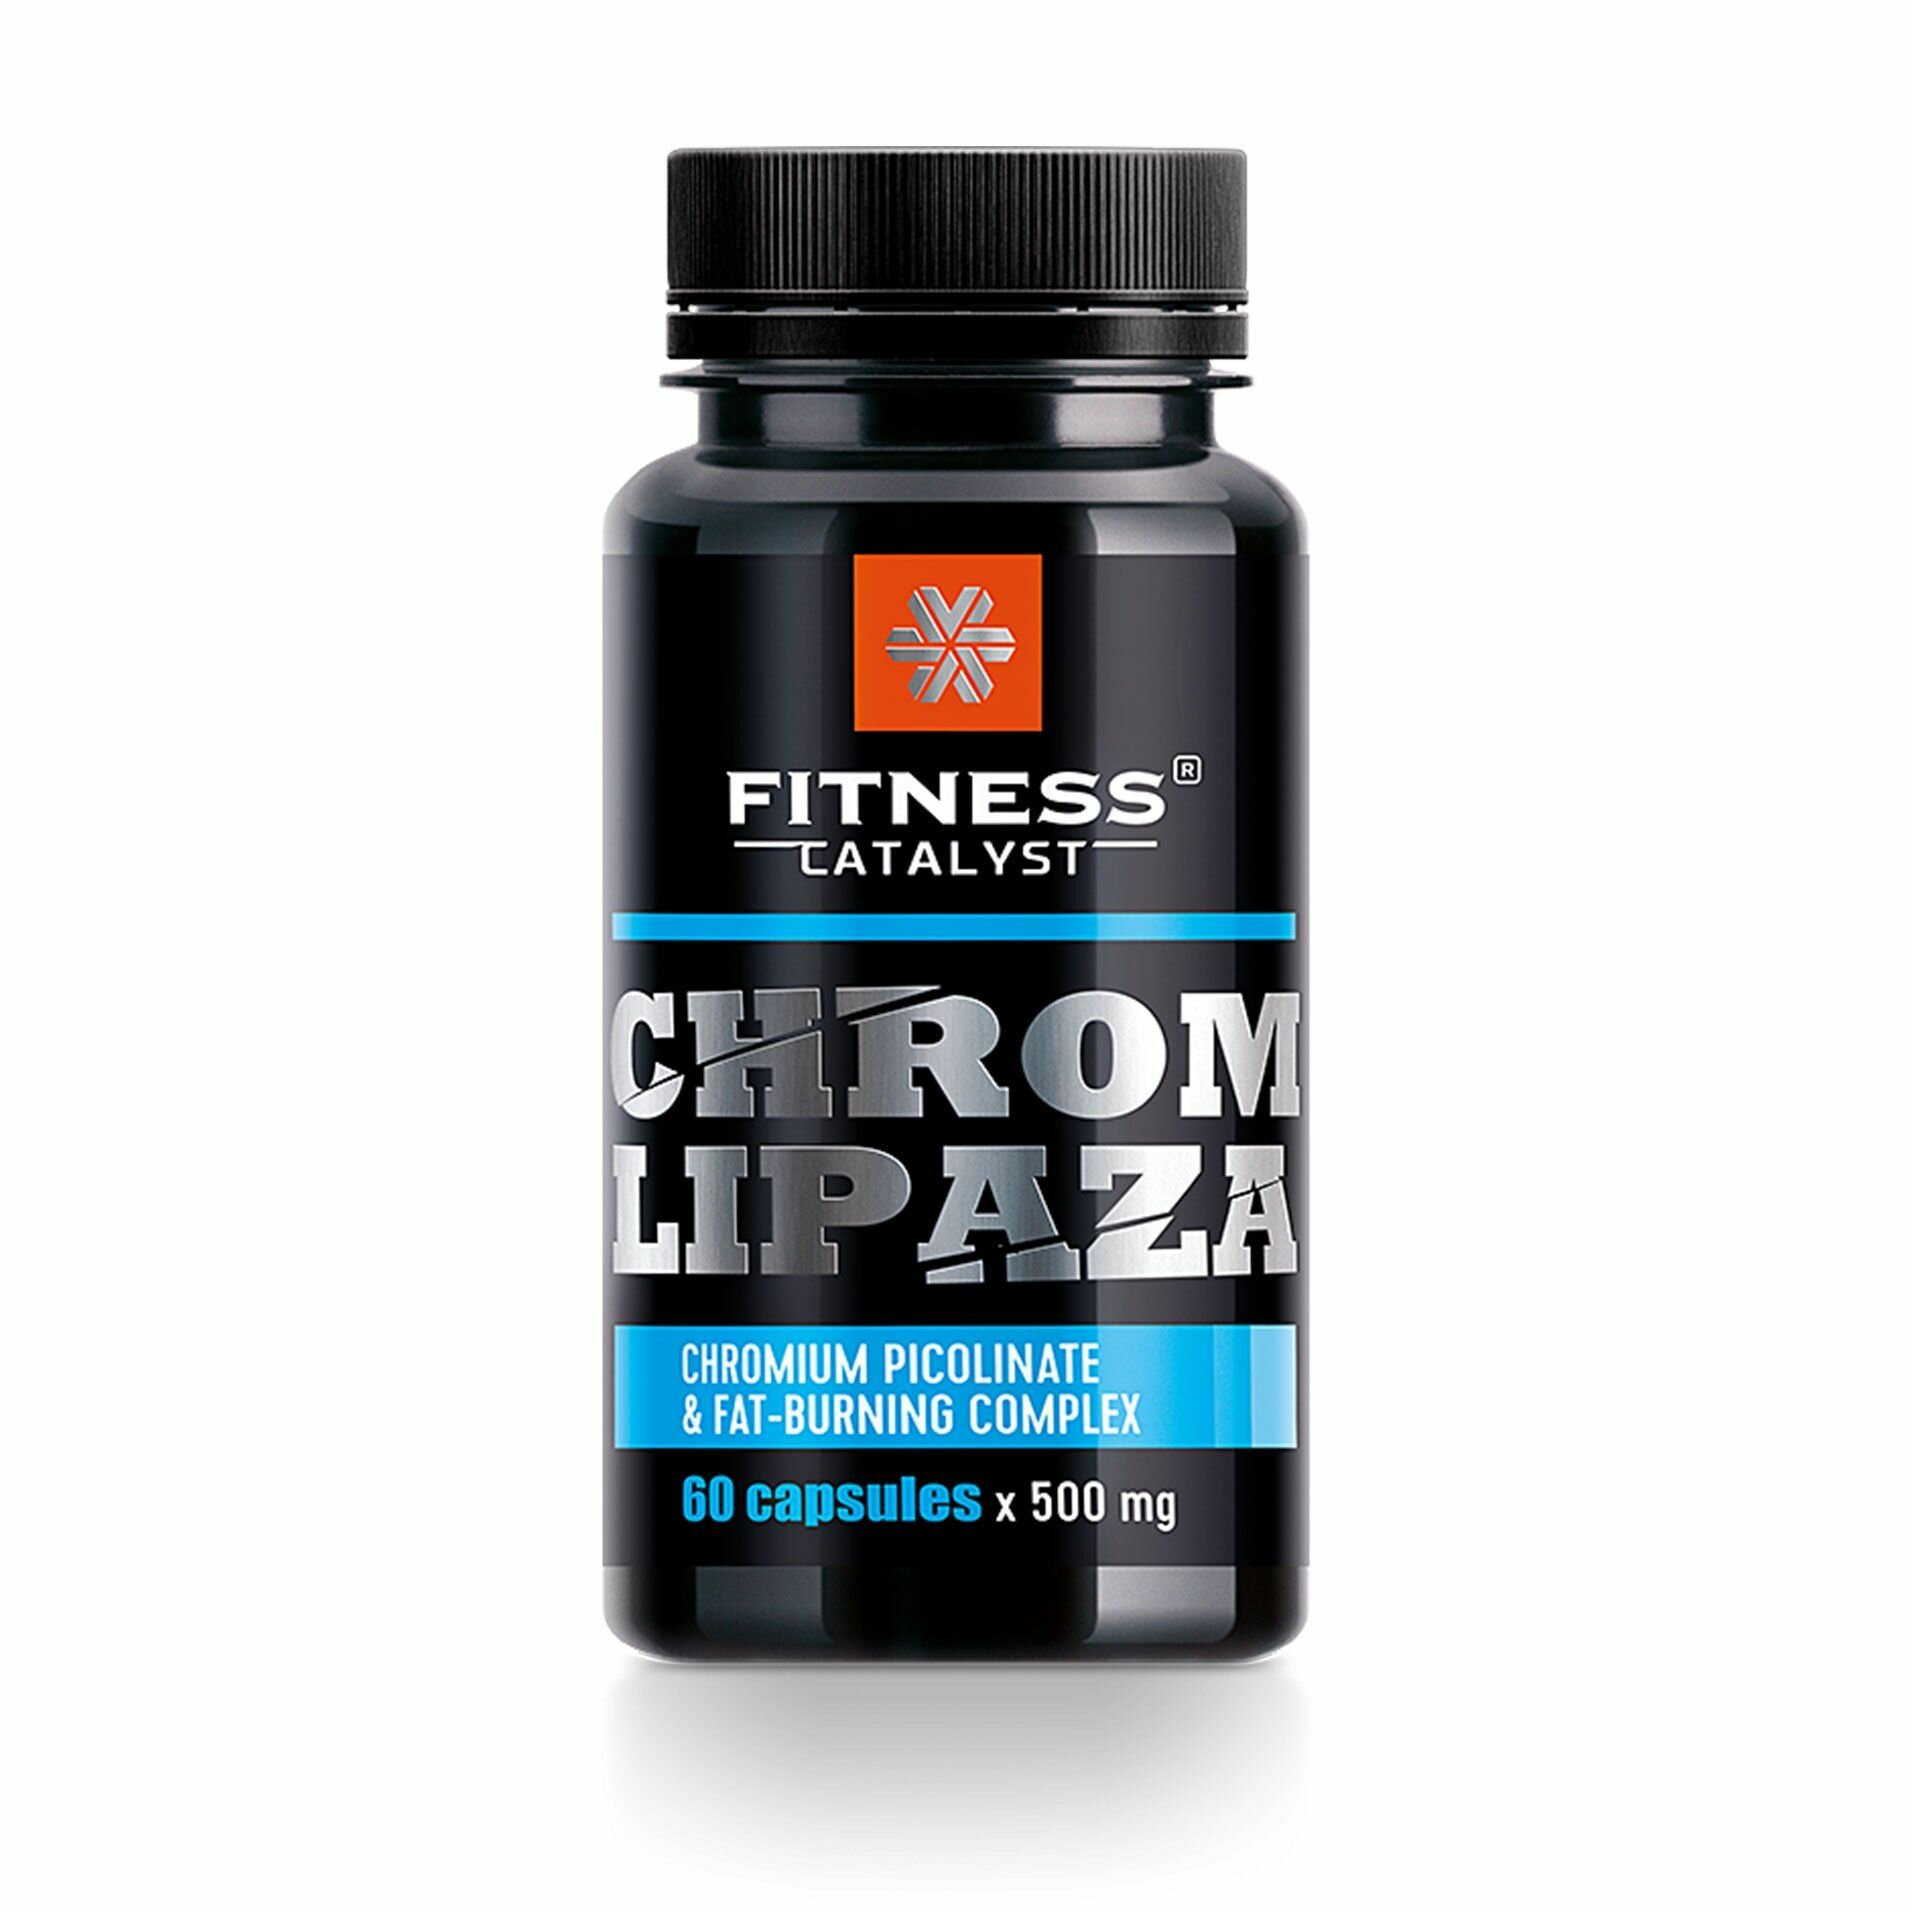 Хромлипаза-Fitness Catalyst Для контроля аппетита и веса